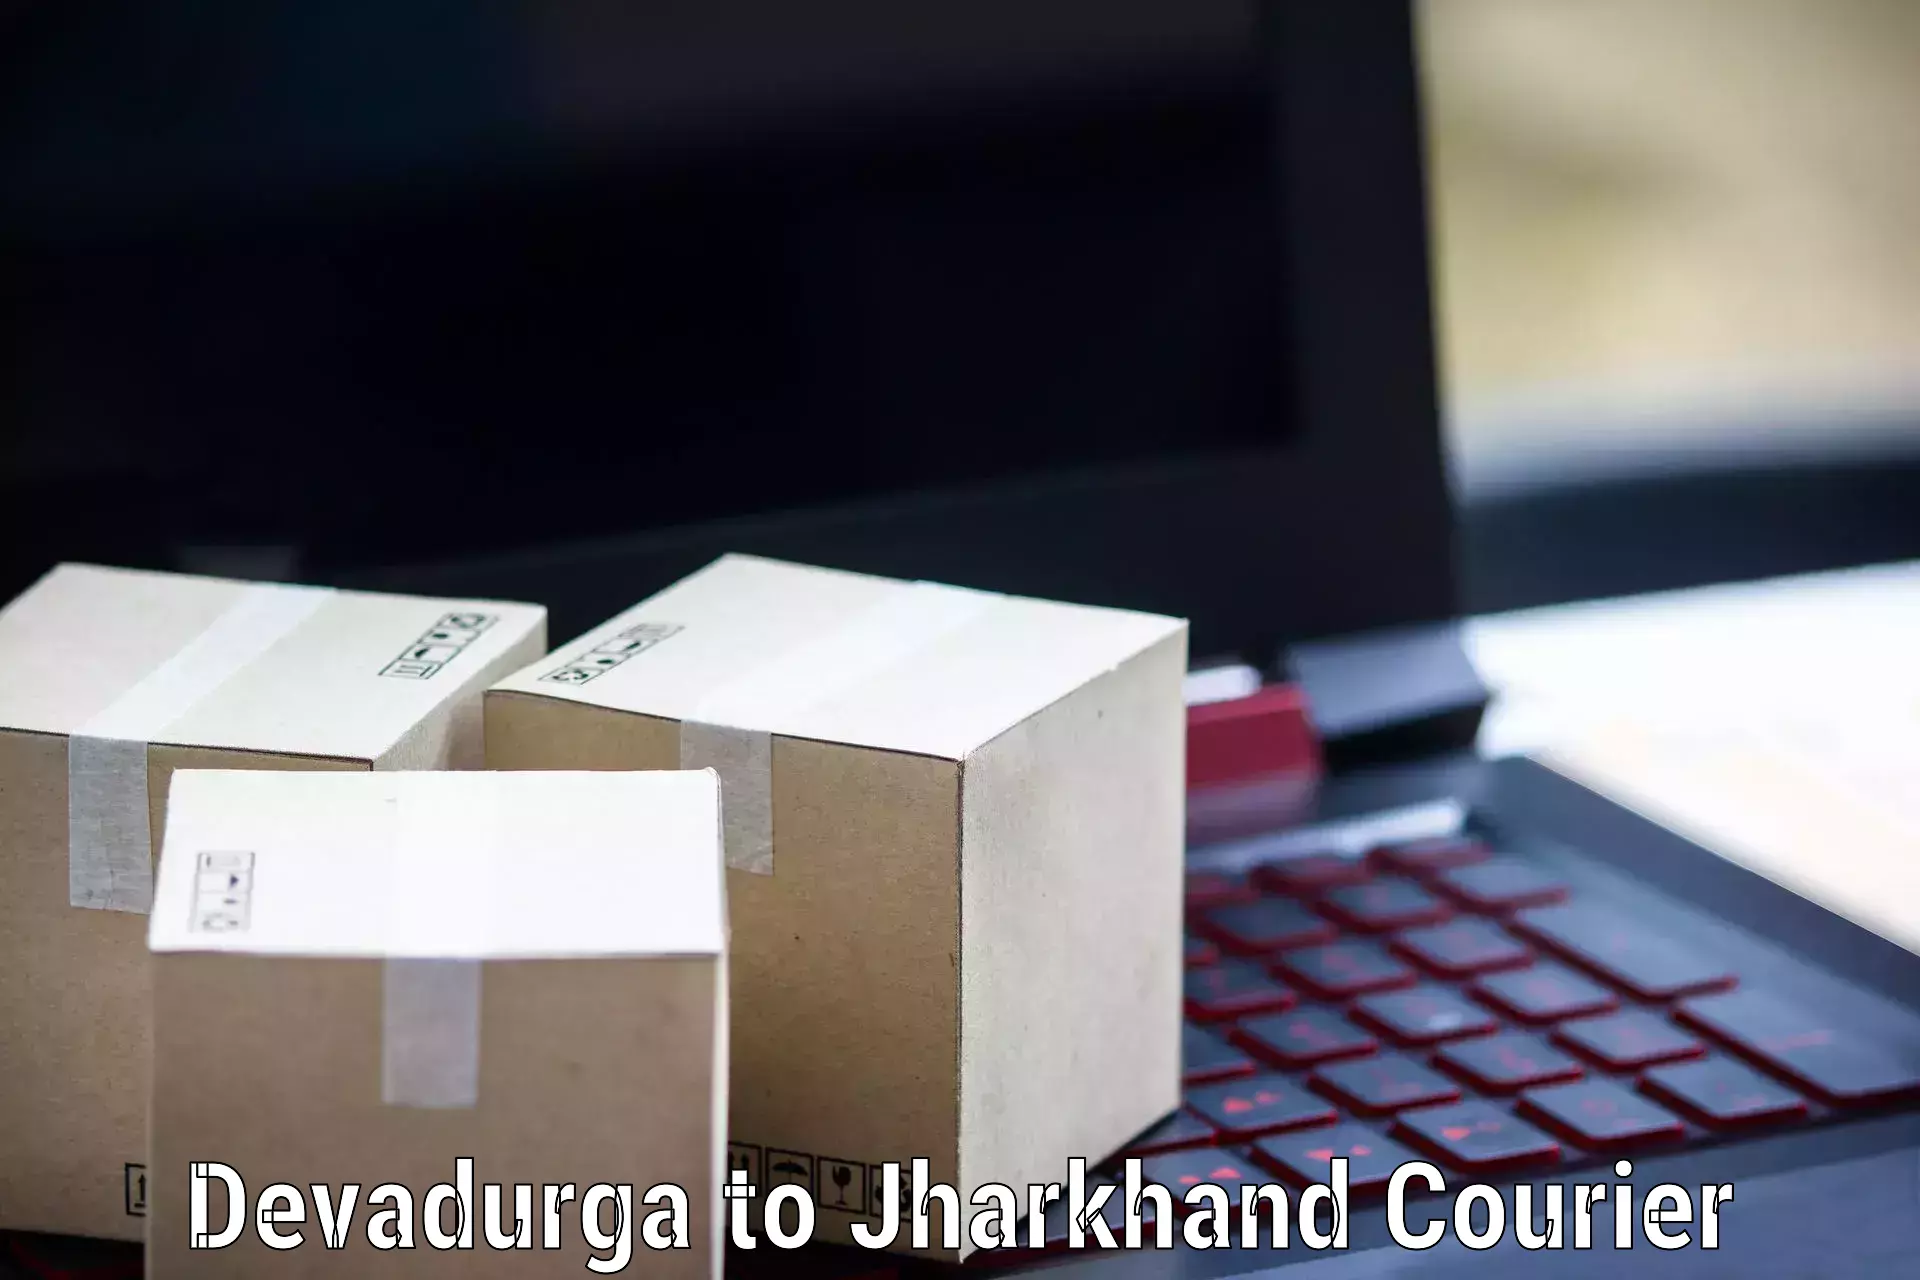 Comprehensive shipping network Devadurga to Ranka Garhwa